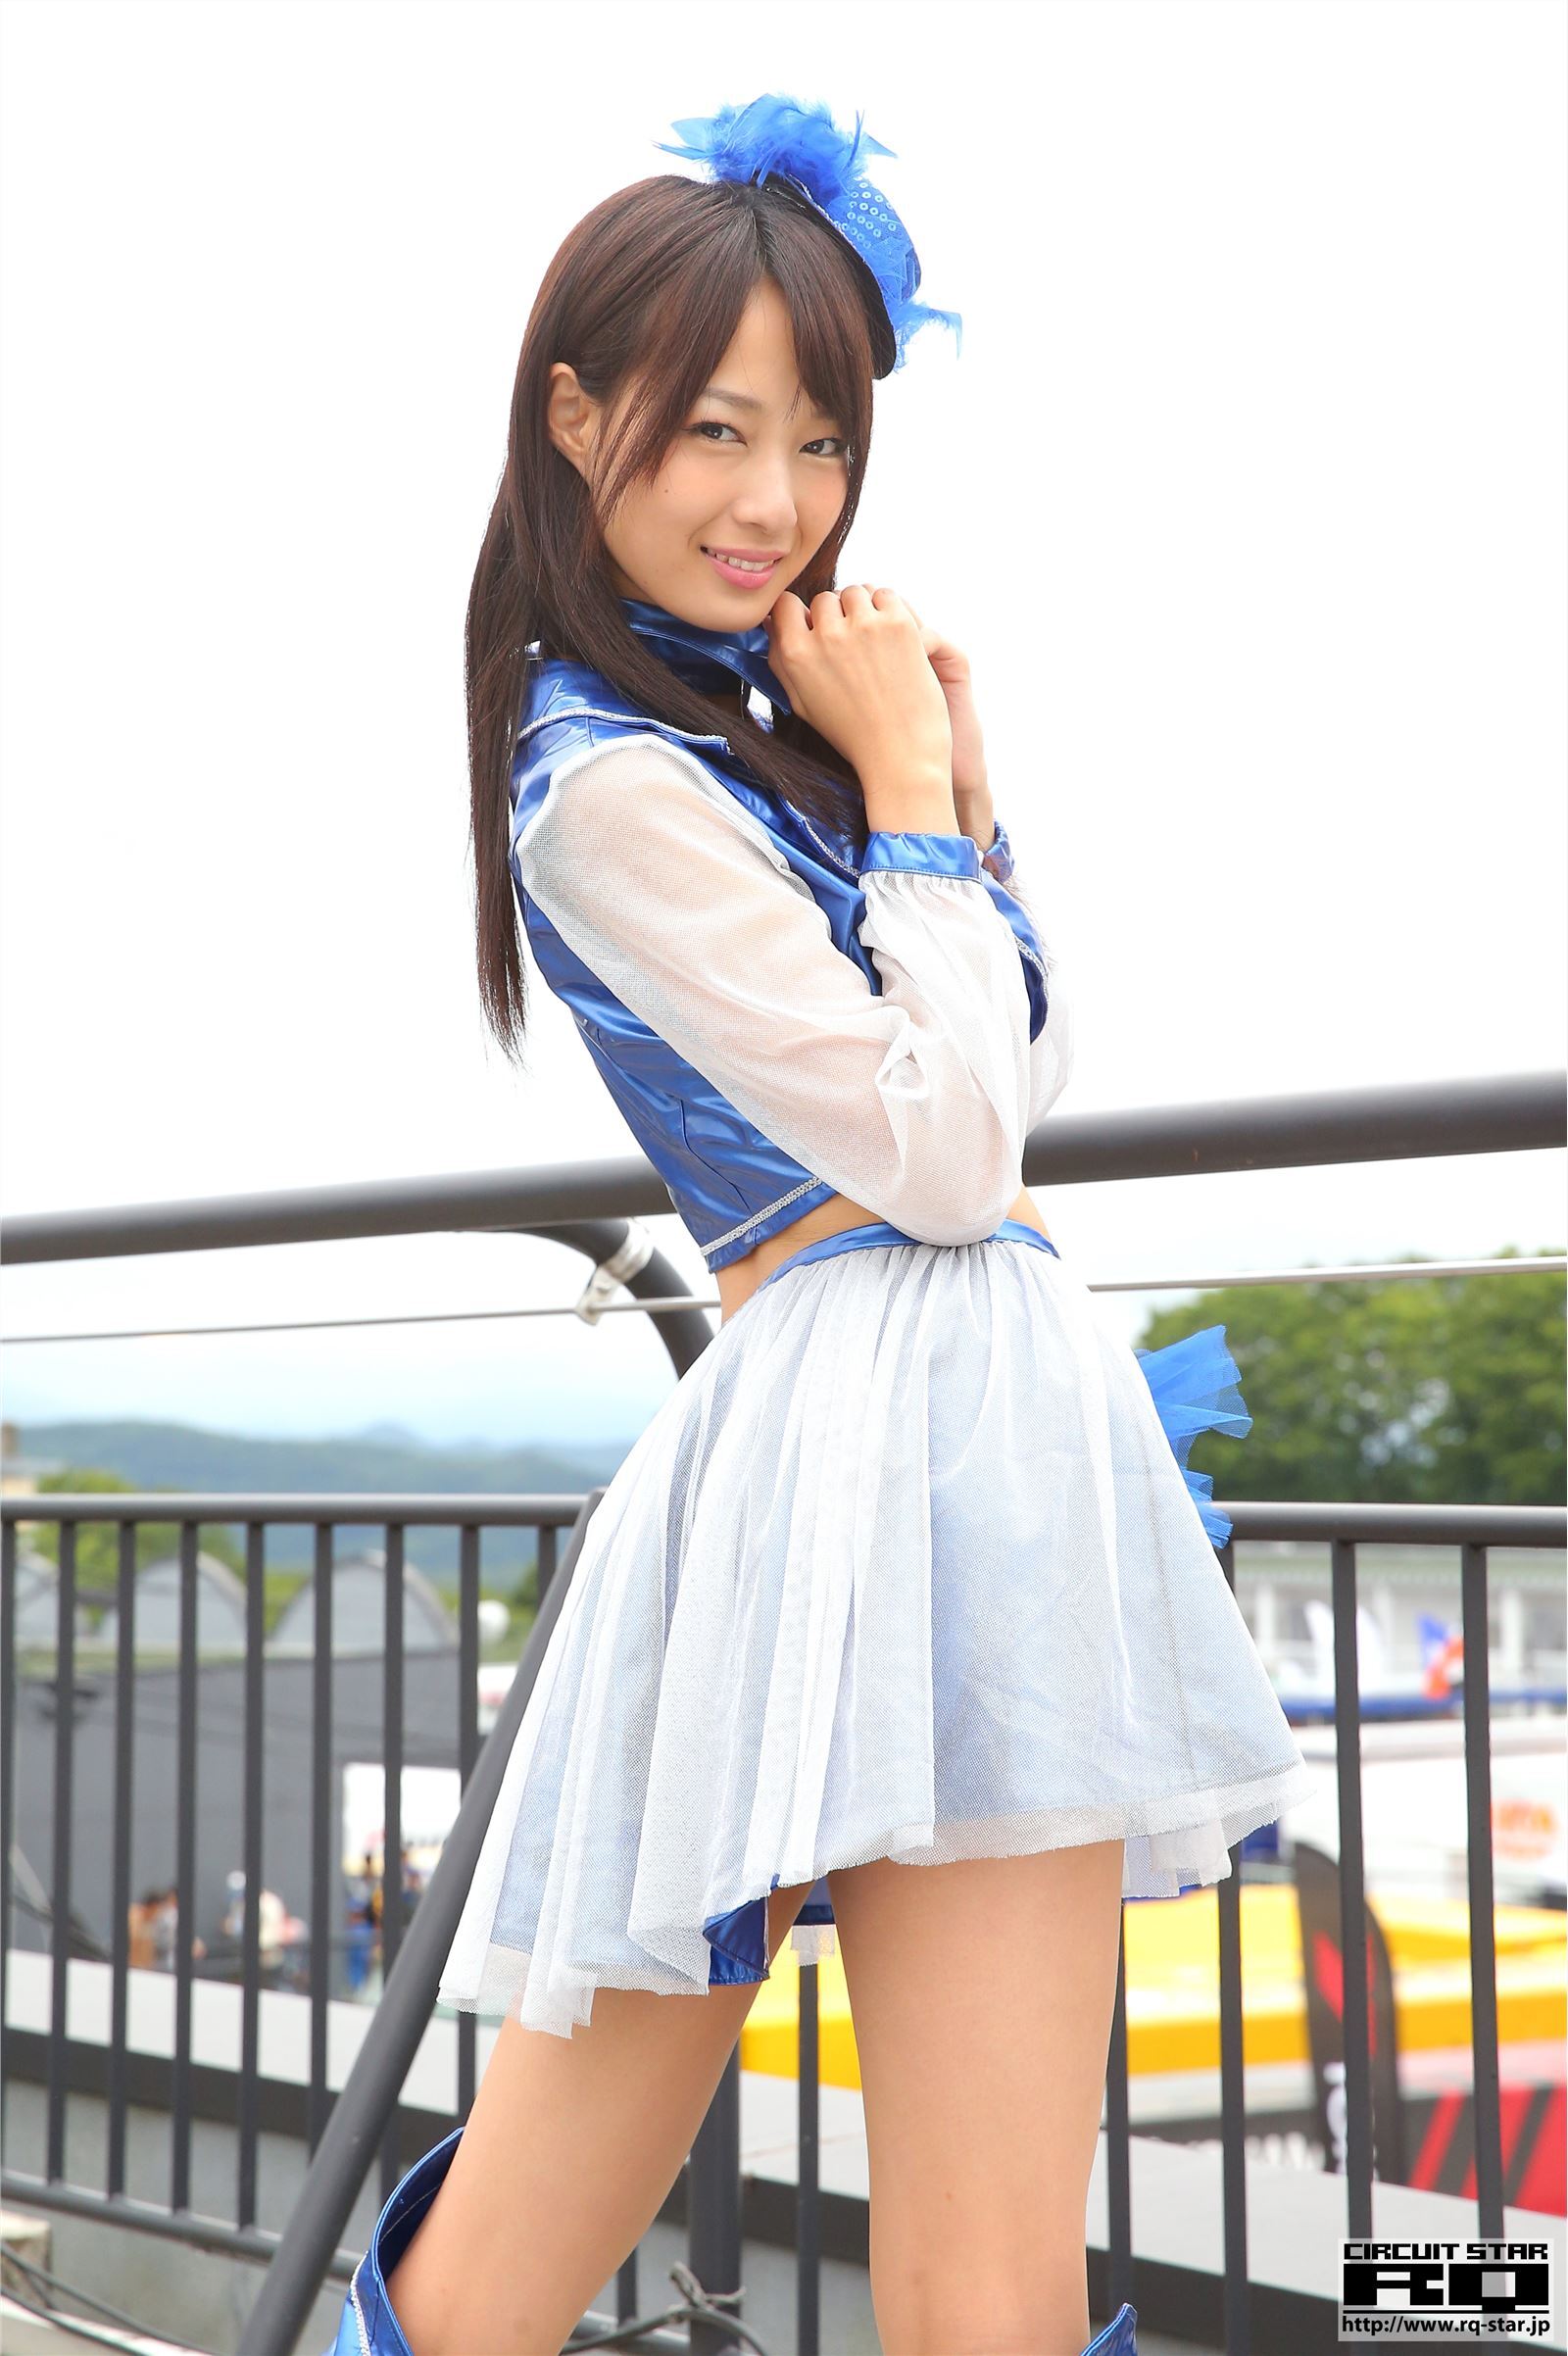 [rq-star] April 30, 2018 Kumi Murayama Murayama race queen